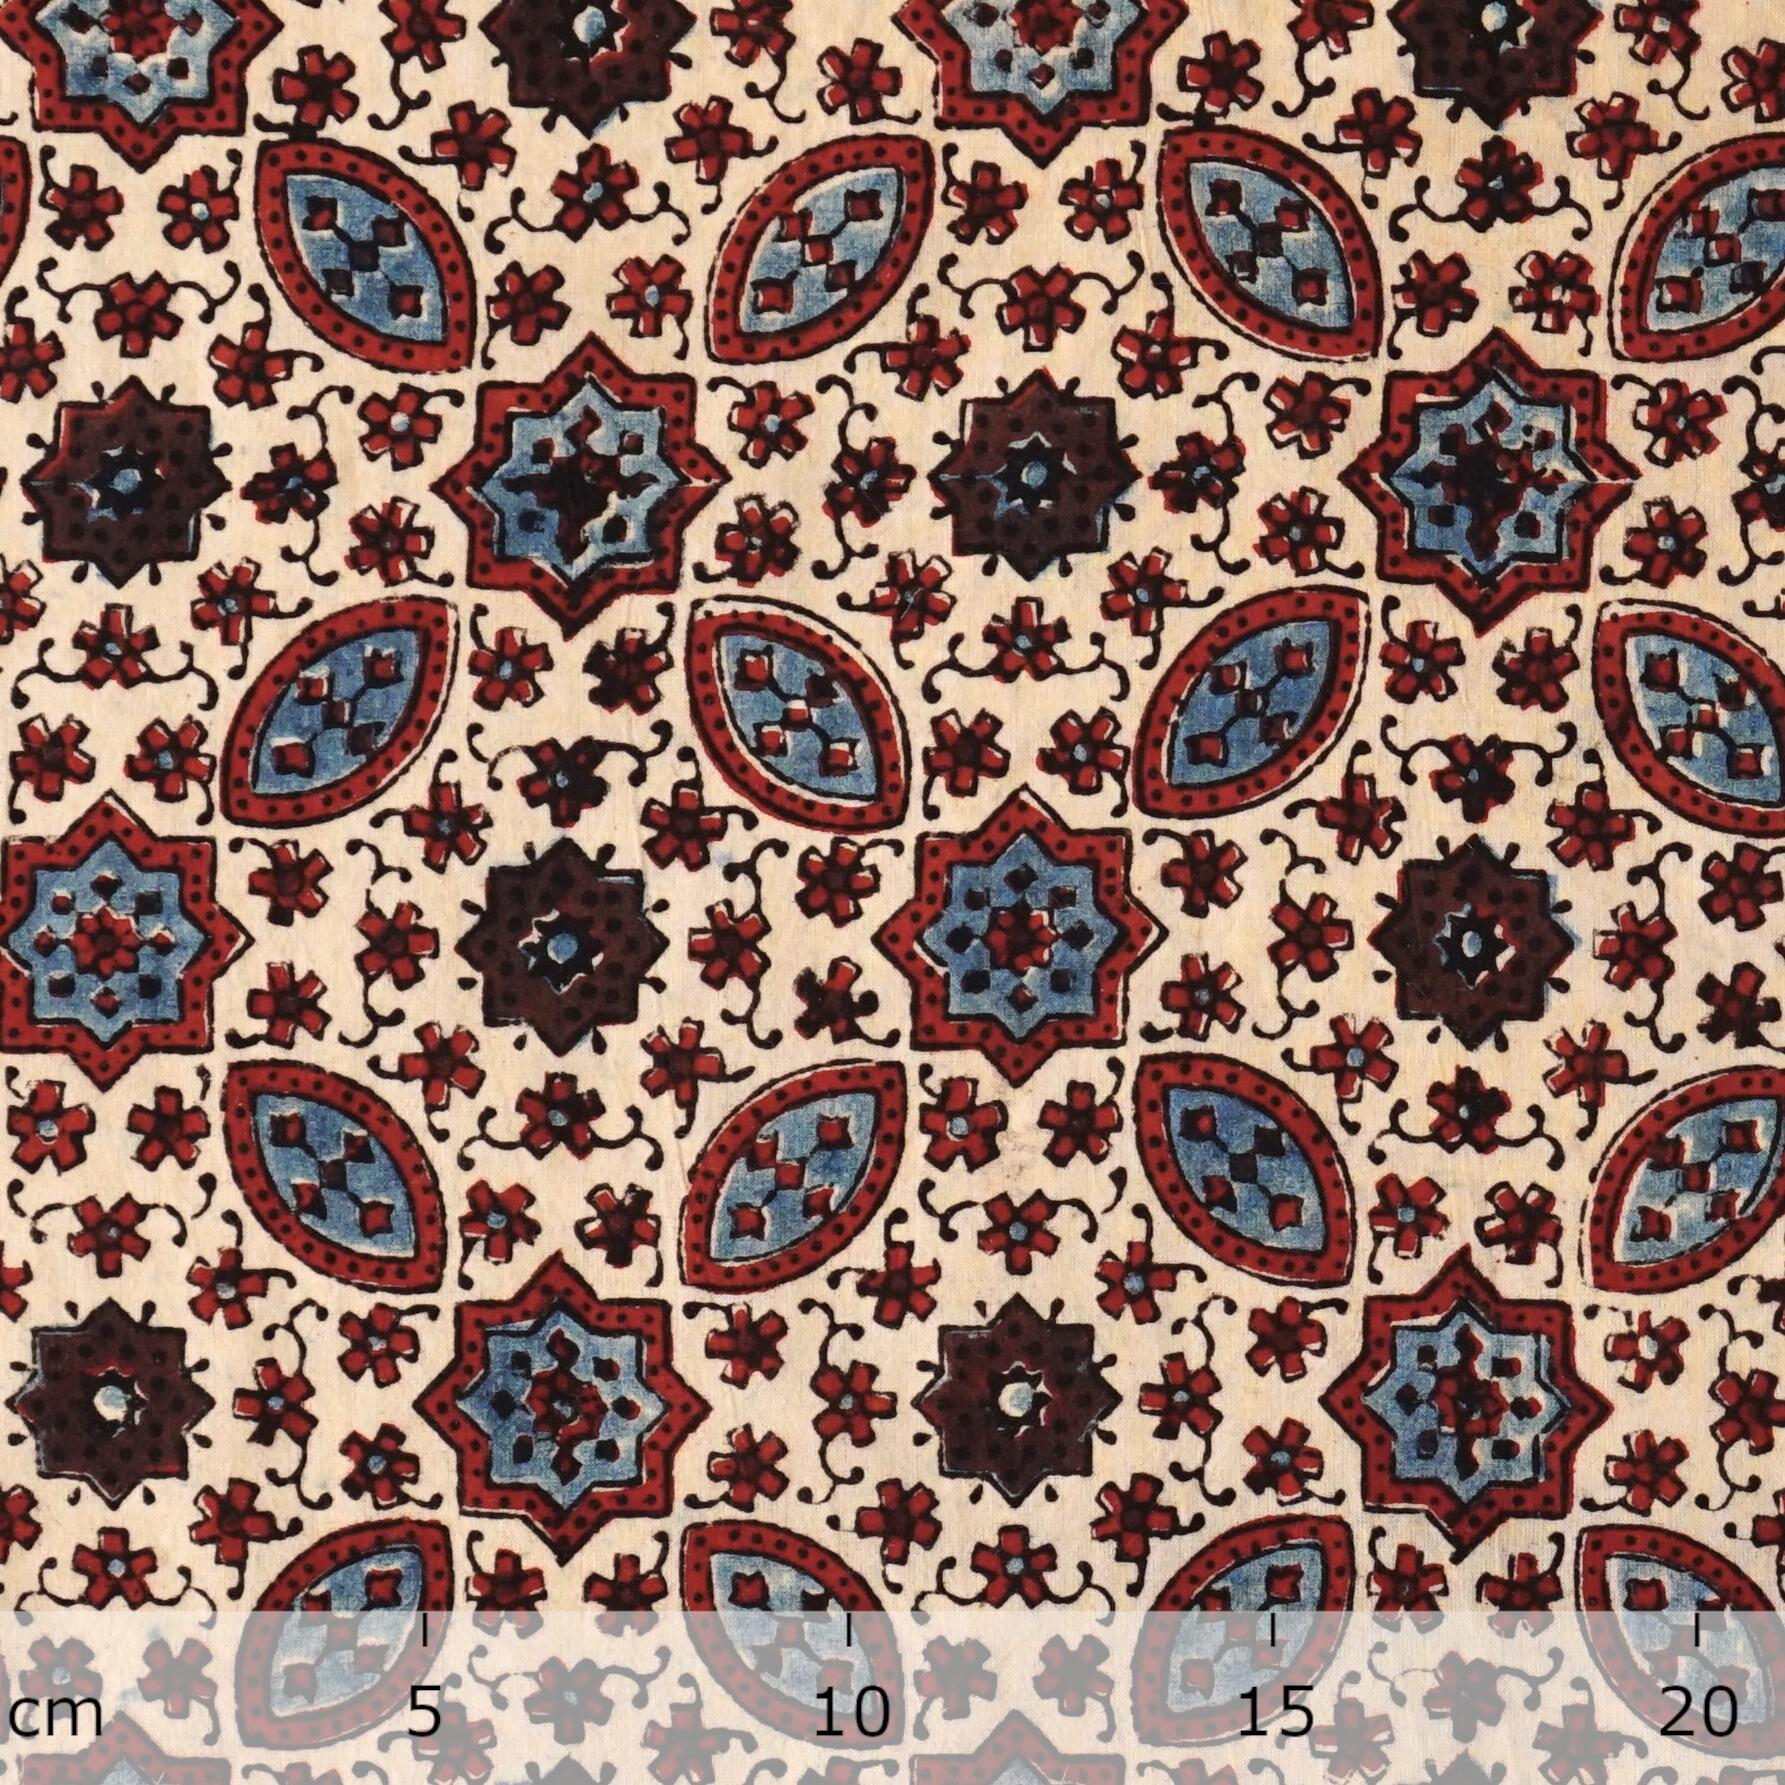 SIK33 - Indian Block-Printed Cotton - Murmurations Design - Indigo, Red & Black Dye - Ruler